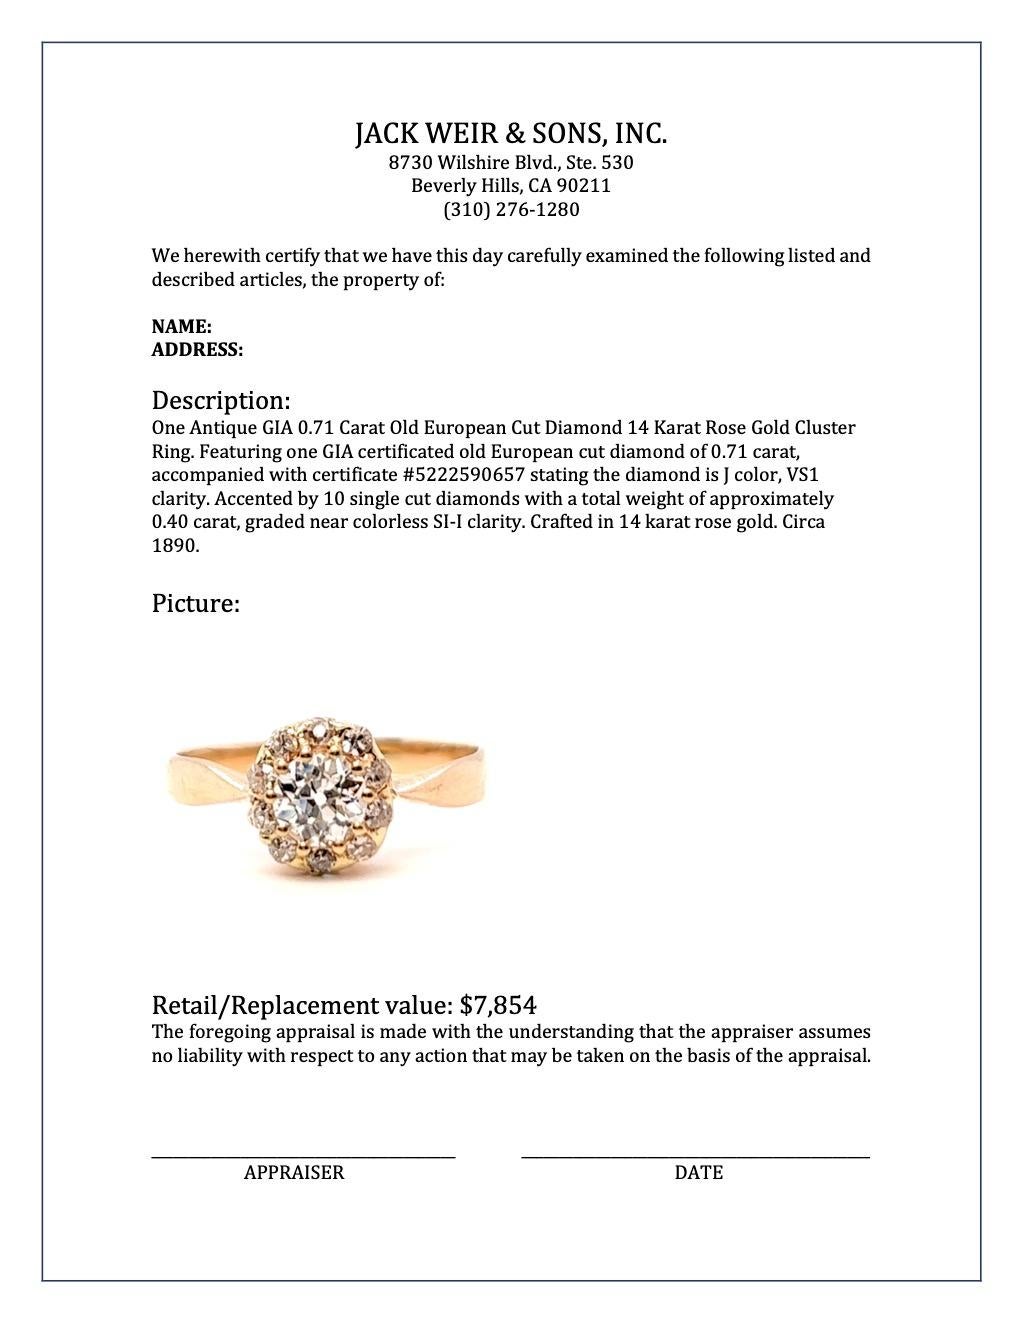 Antique GIA 0.71 Carat Old European Cut Diamond 14 Karat Rose Gold Cluster Ring For Sale 2